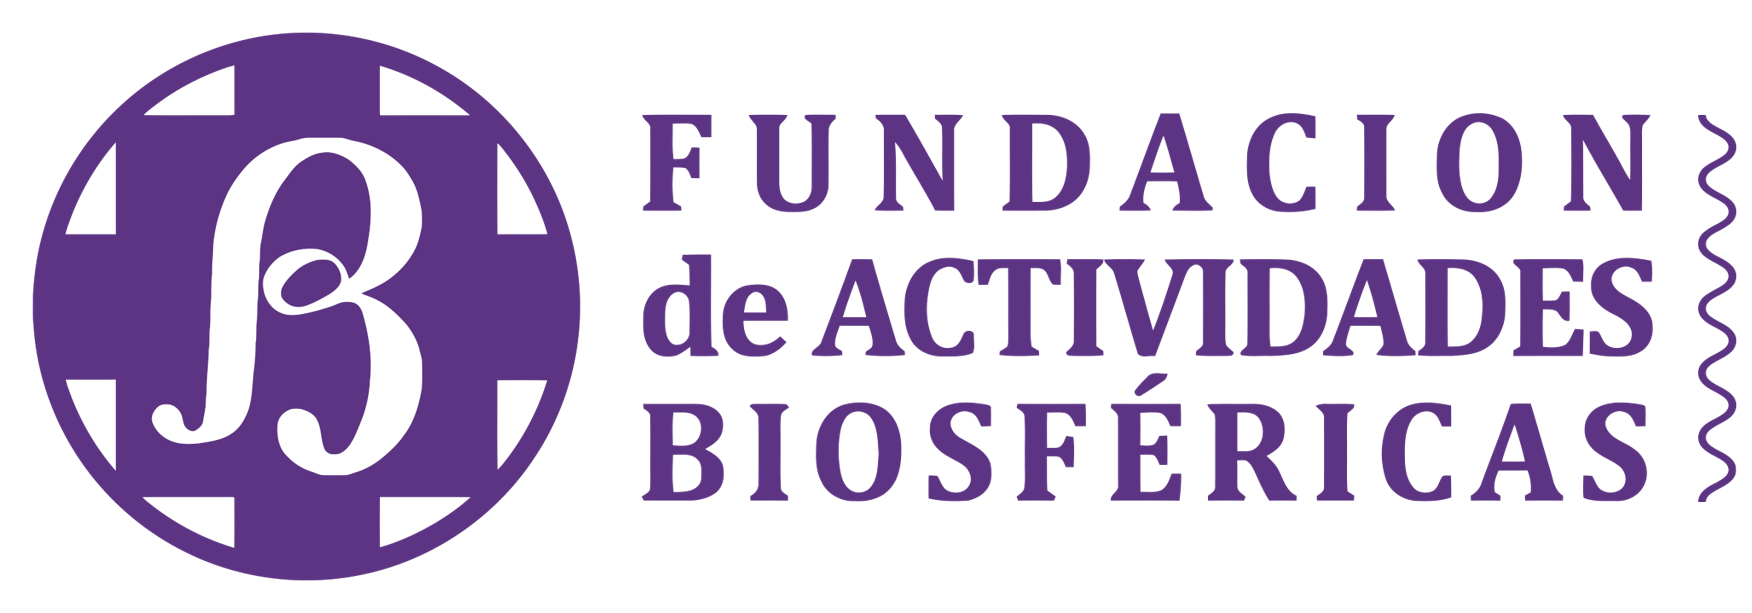 Picture of Fundacion de Actividades Biosfericas logo